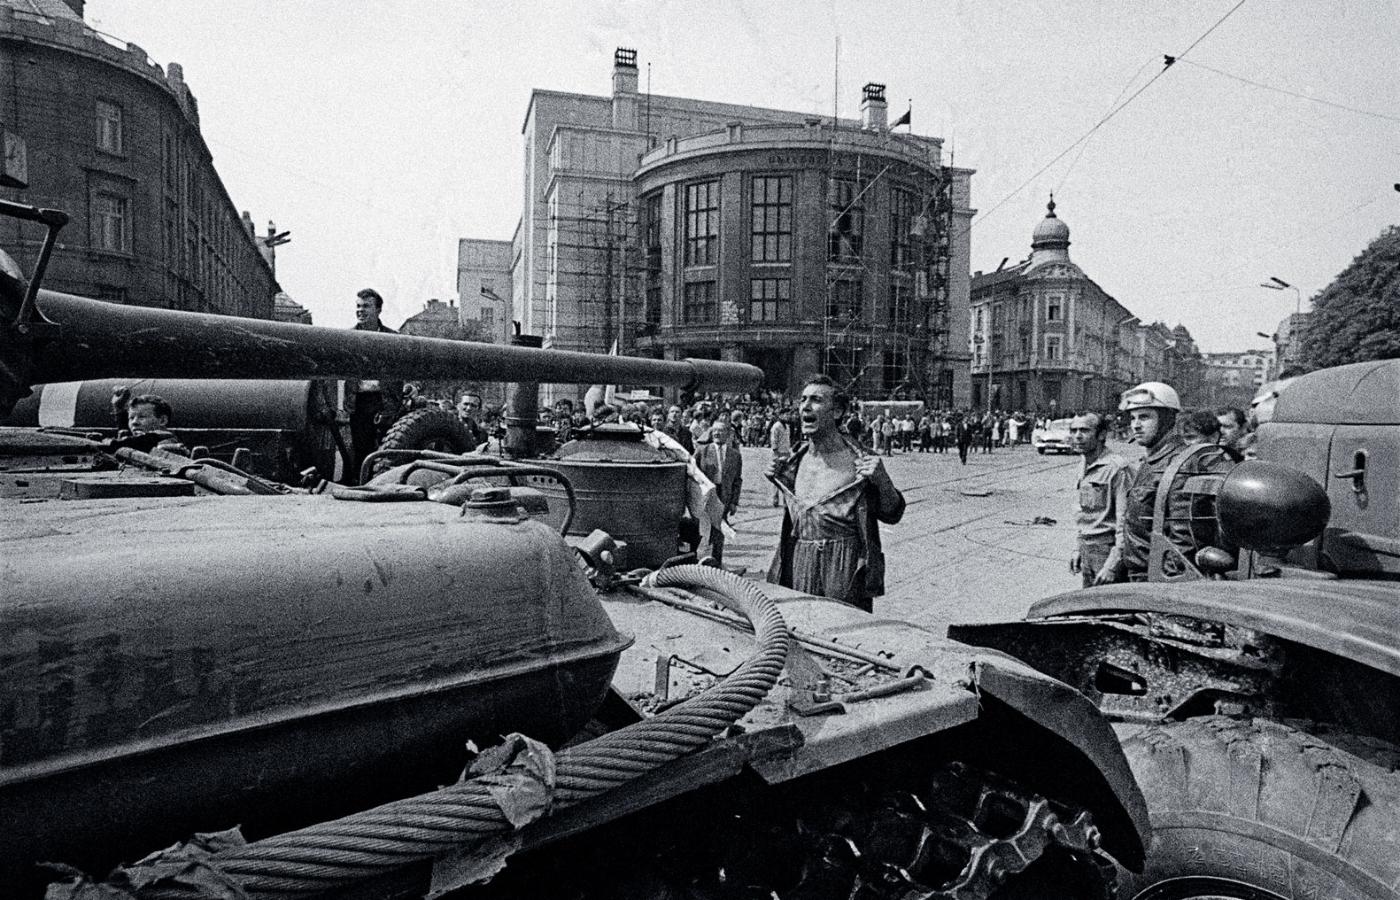 Dramatyczny koniec czechosłowackiego eksperymentu: czołgi wojsk Układu Warszawskiego na ulicach czeskich i słowackich miast, tu w Bratysławie, 21 sierpnia 1968 r.